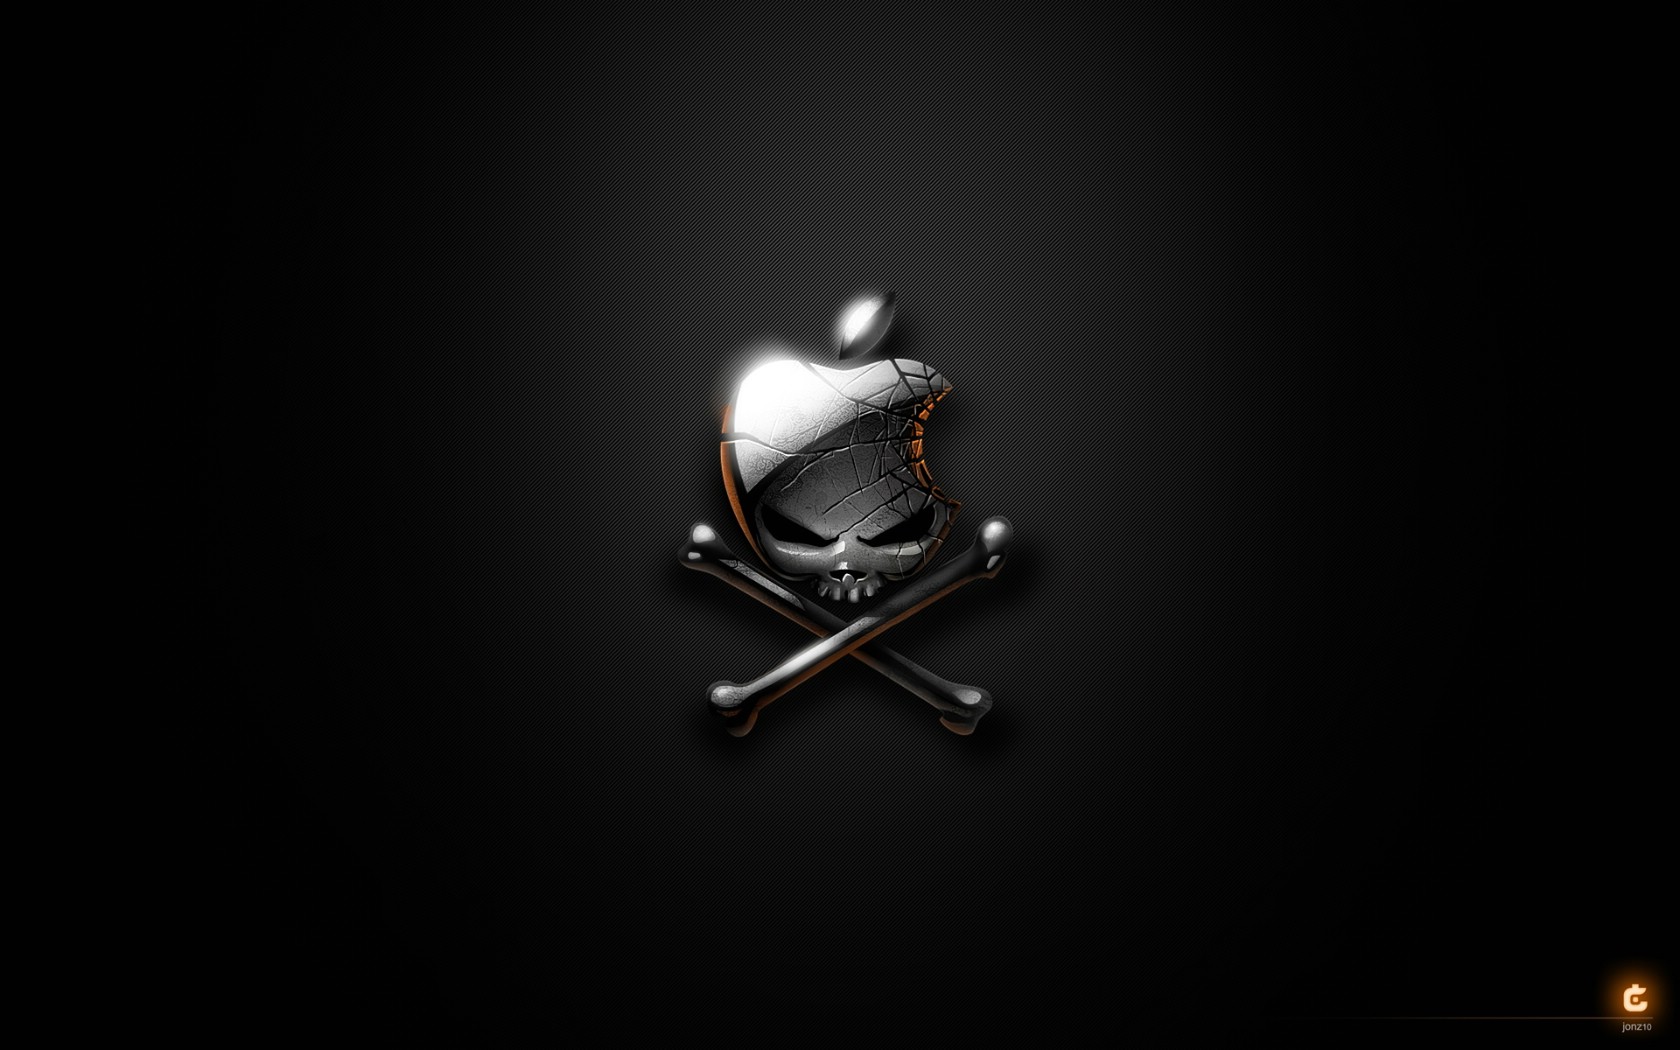 苹果logo壁纸黑色图片